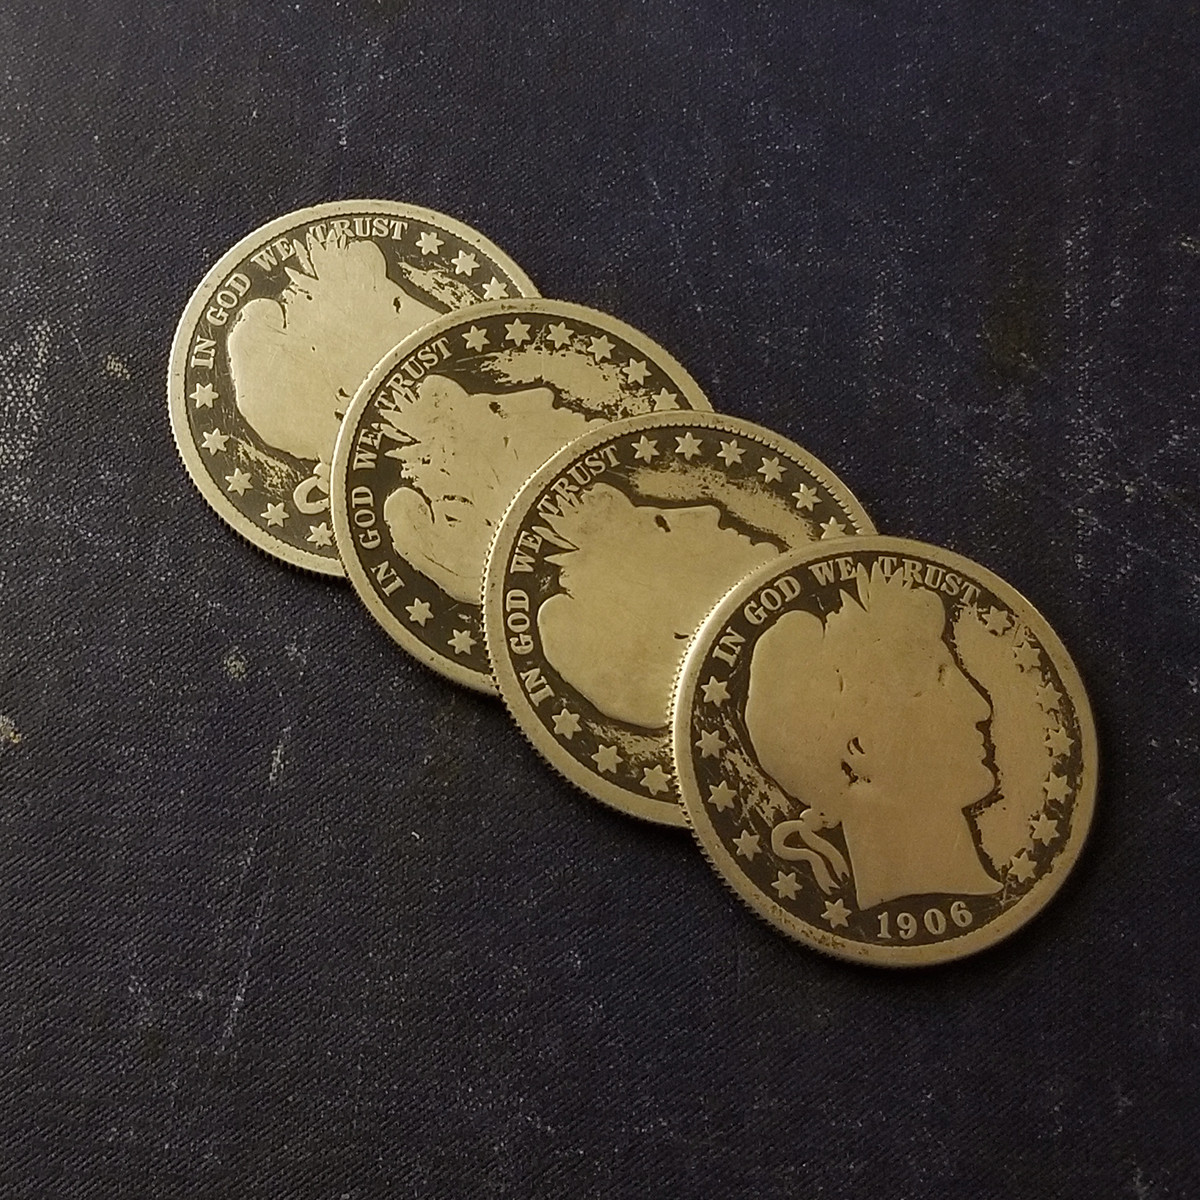 Martinka Whisper Coin Set - Barber Half Dollars